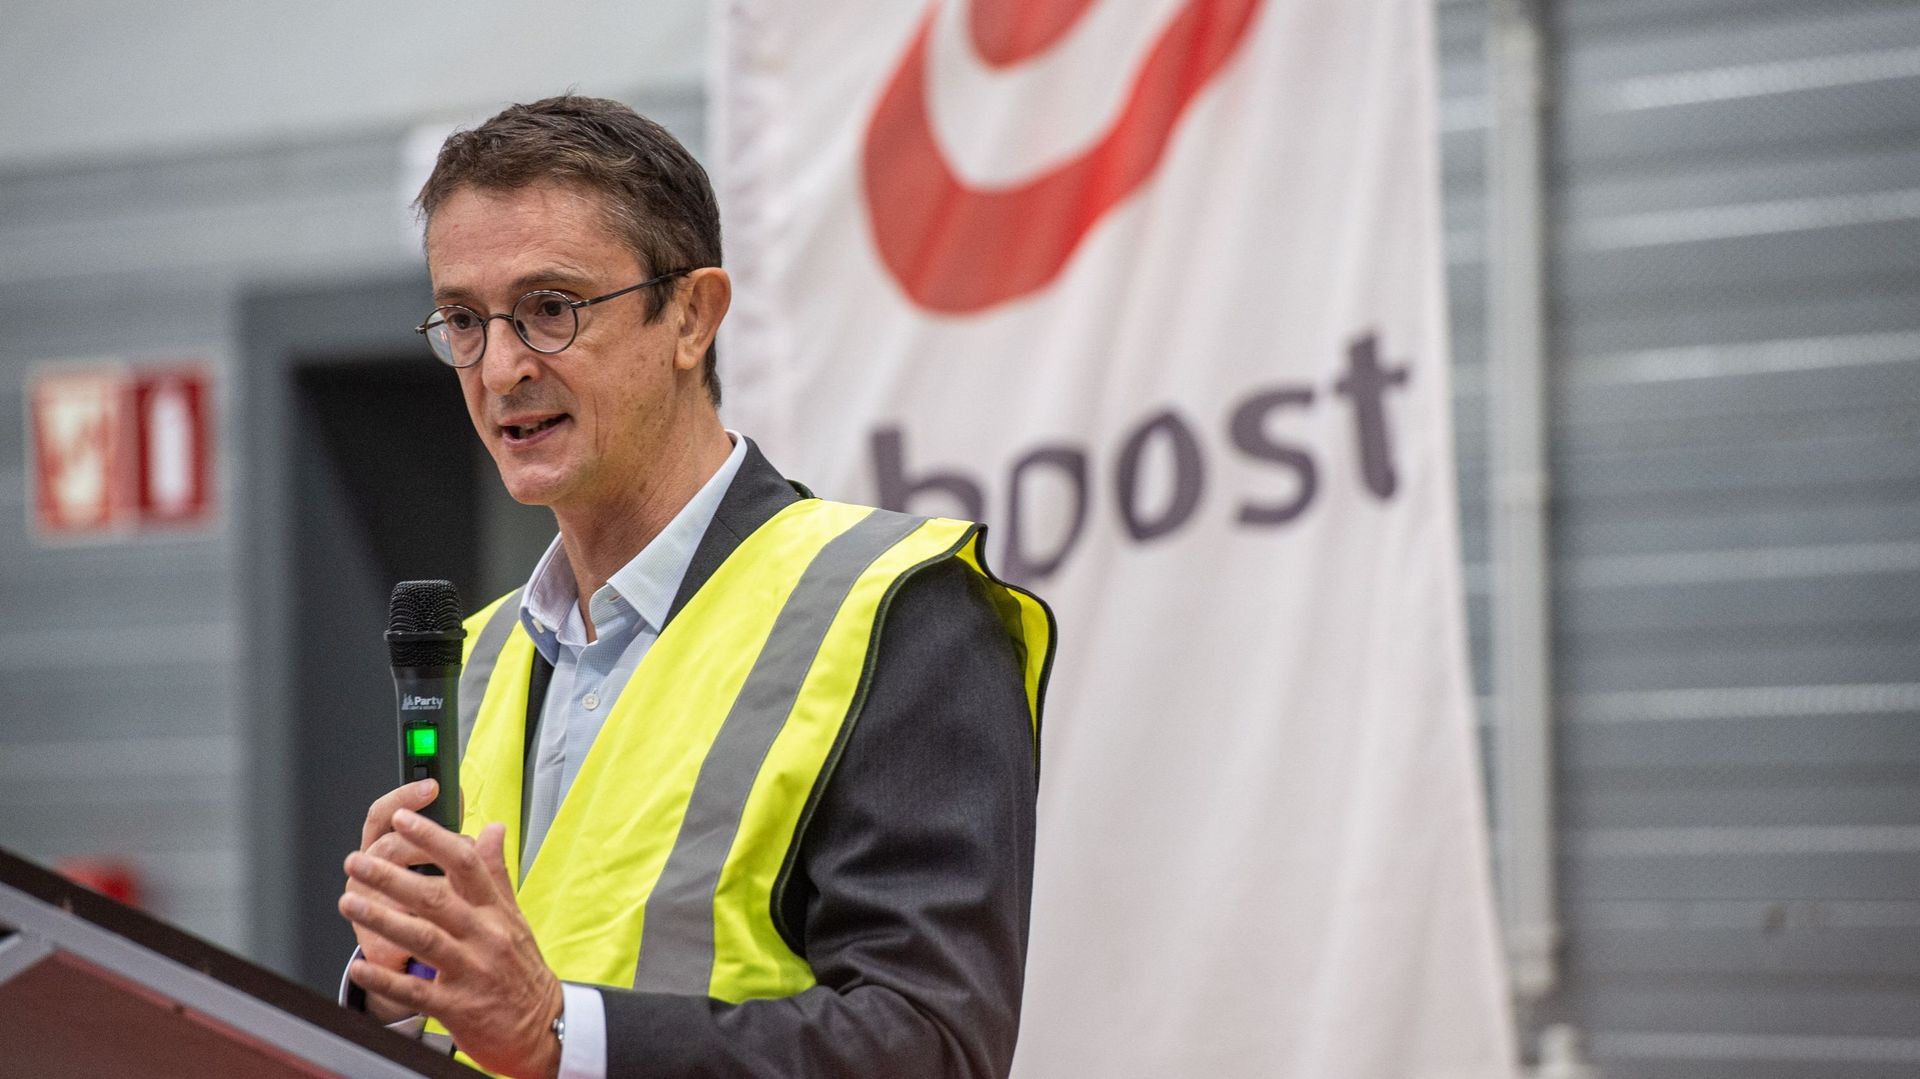 Dirk Tirez, ex-CEO de Bpost, est vu au centre de distribution de la poste belge bpost, mercredi 05 octobre 2022 à ANTWERP. 